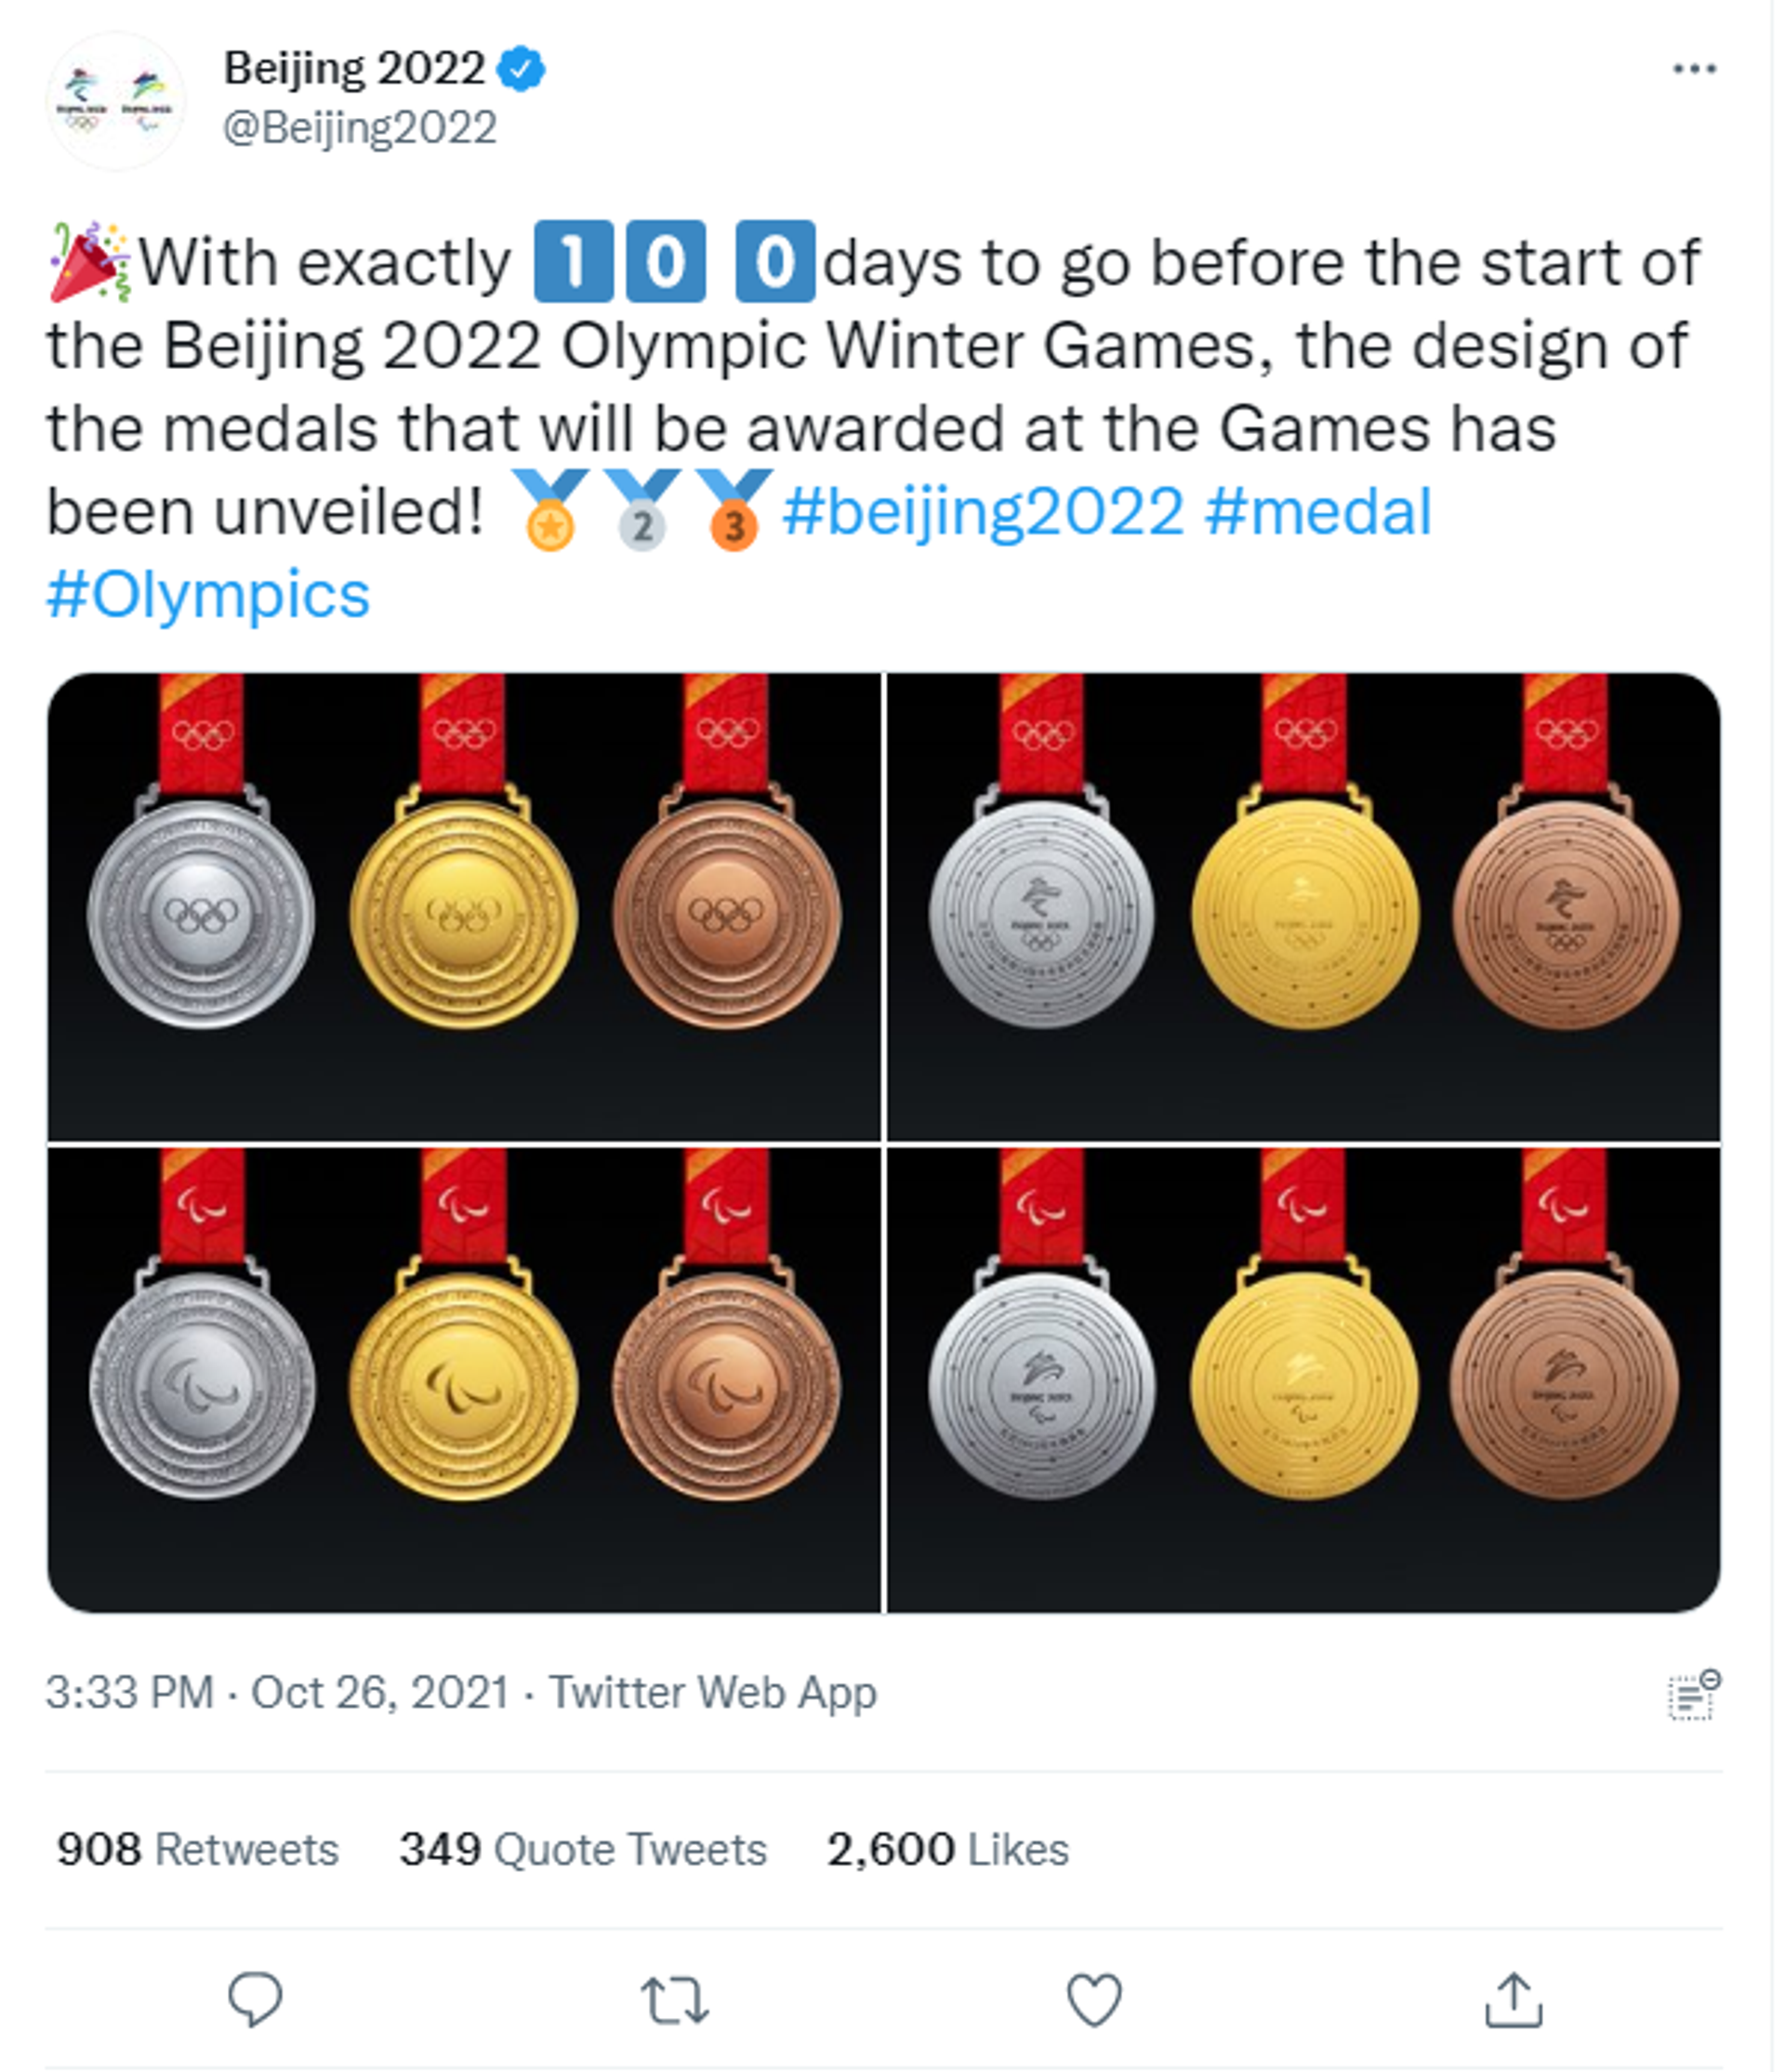 2022冬奥会奖牌数量图片